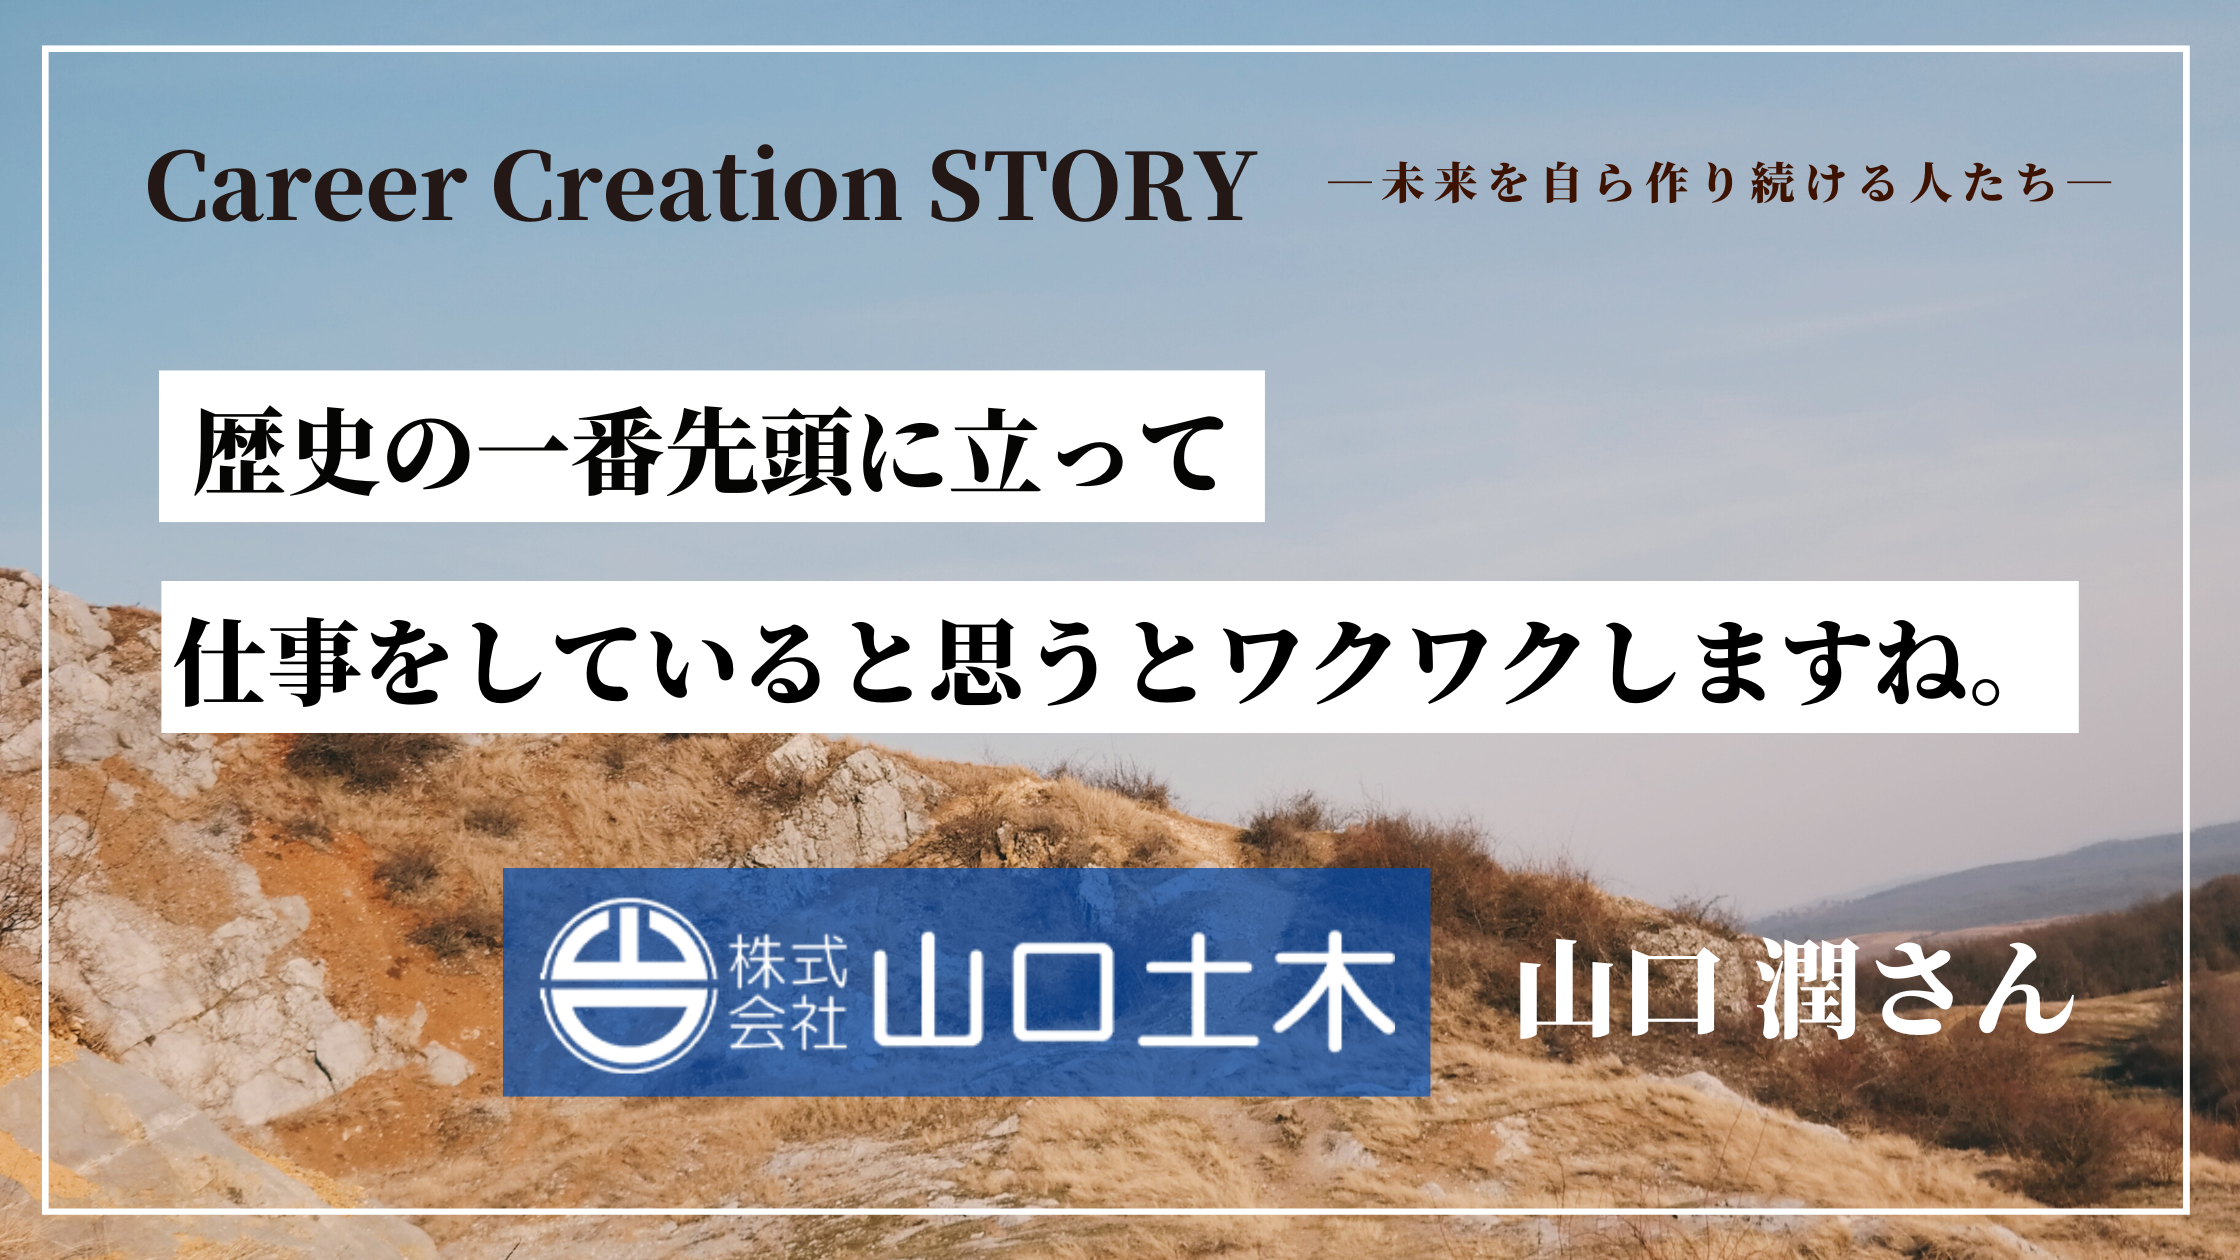 Career Creation STORY #1：エン・ジャパン（株）山内貴仁さん